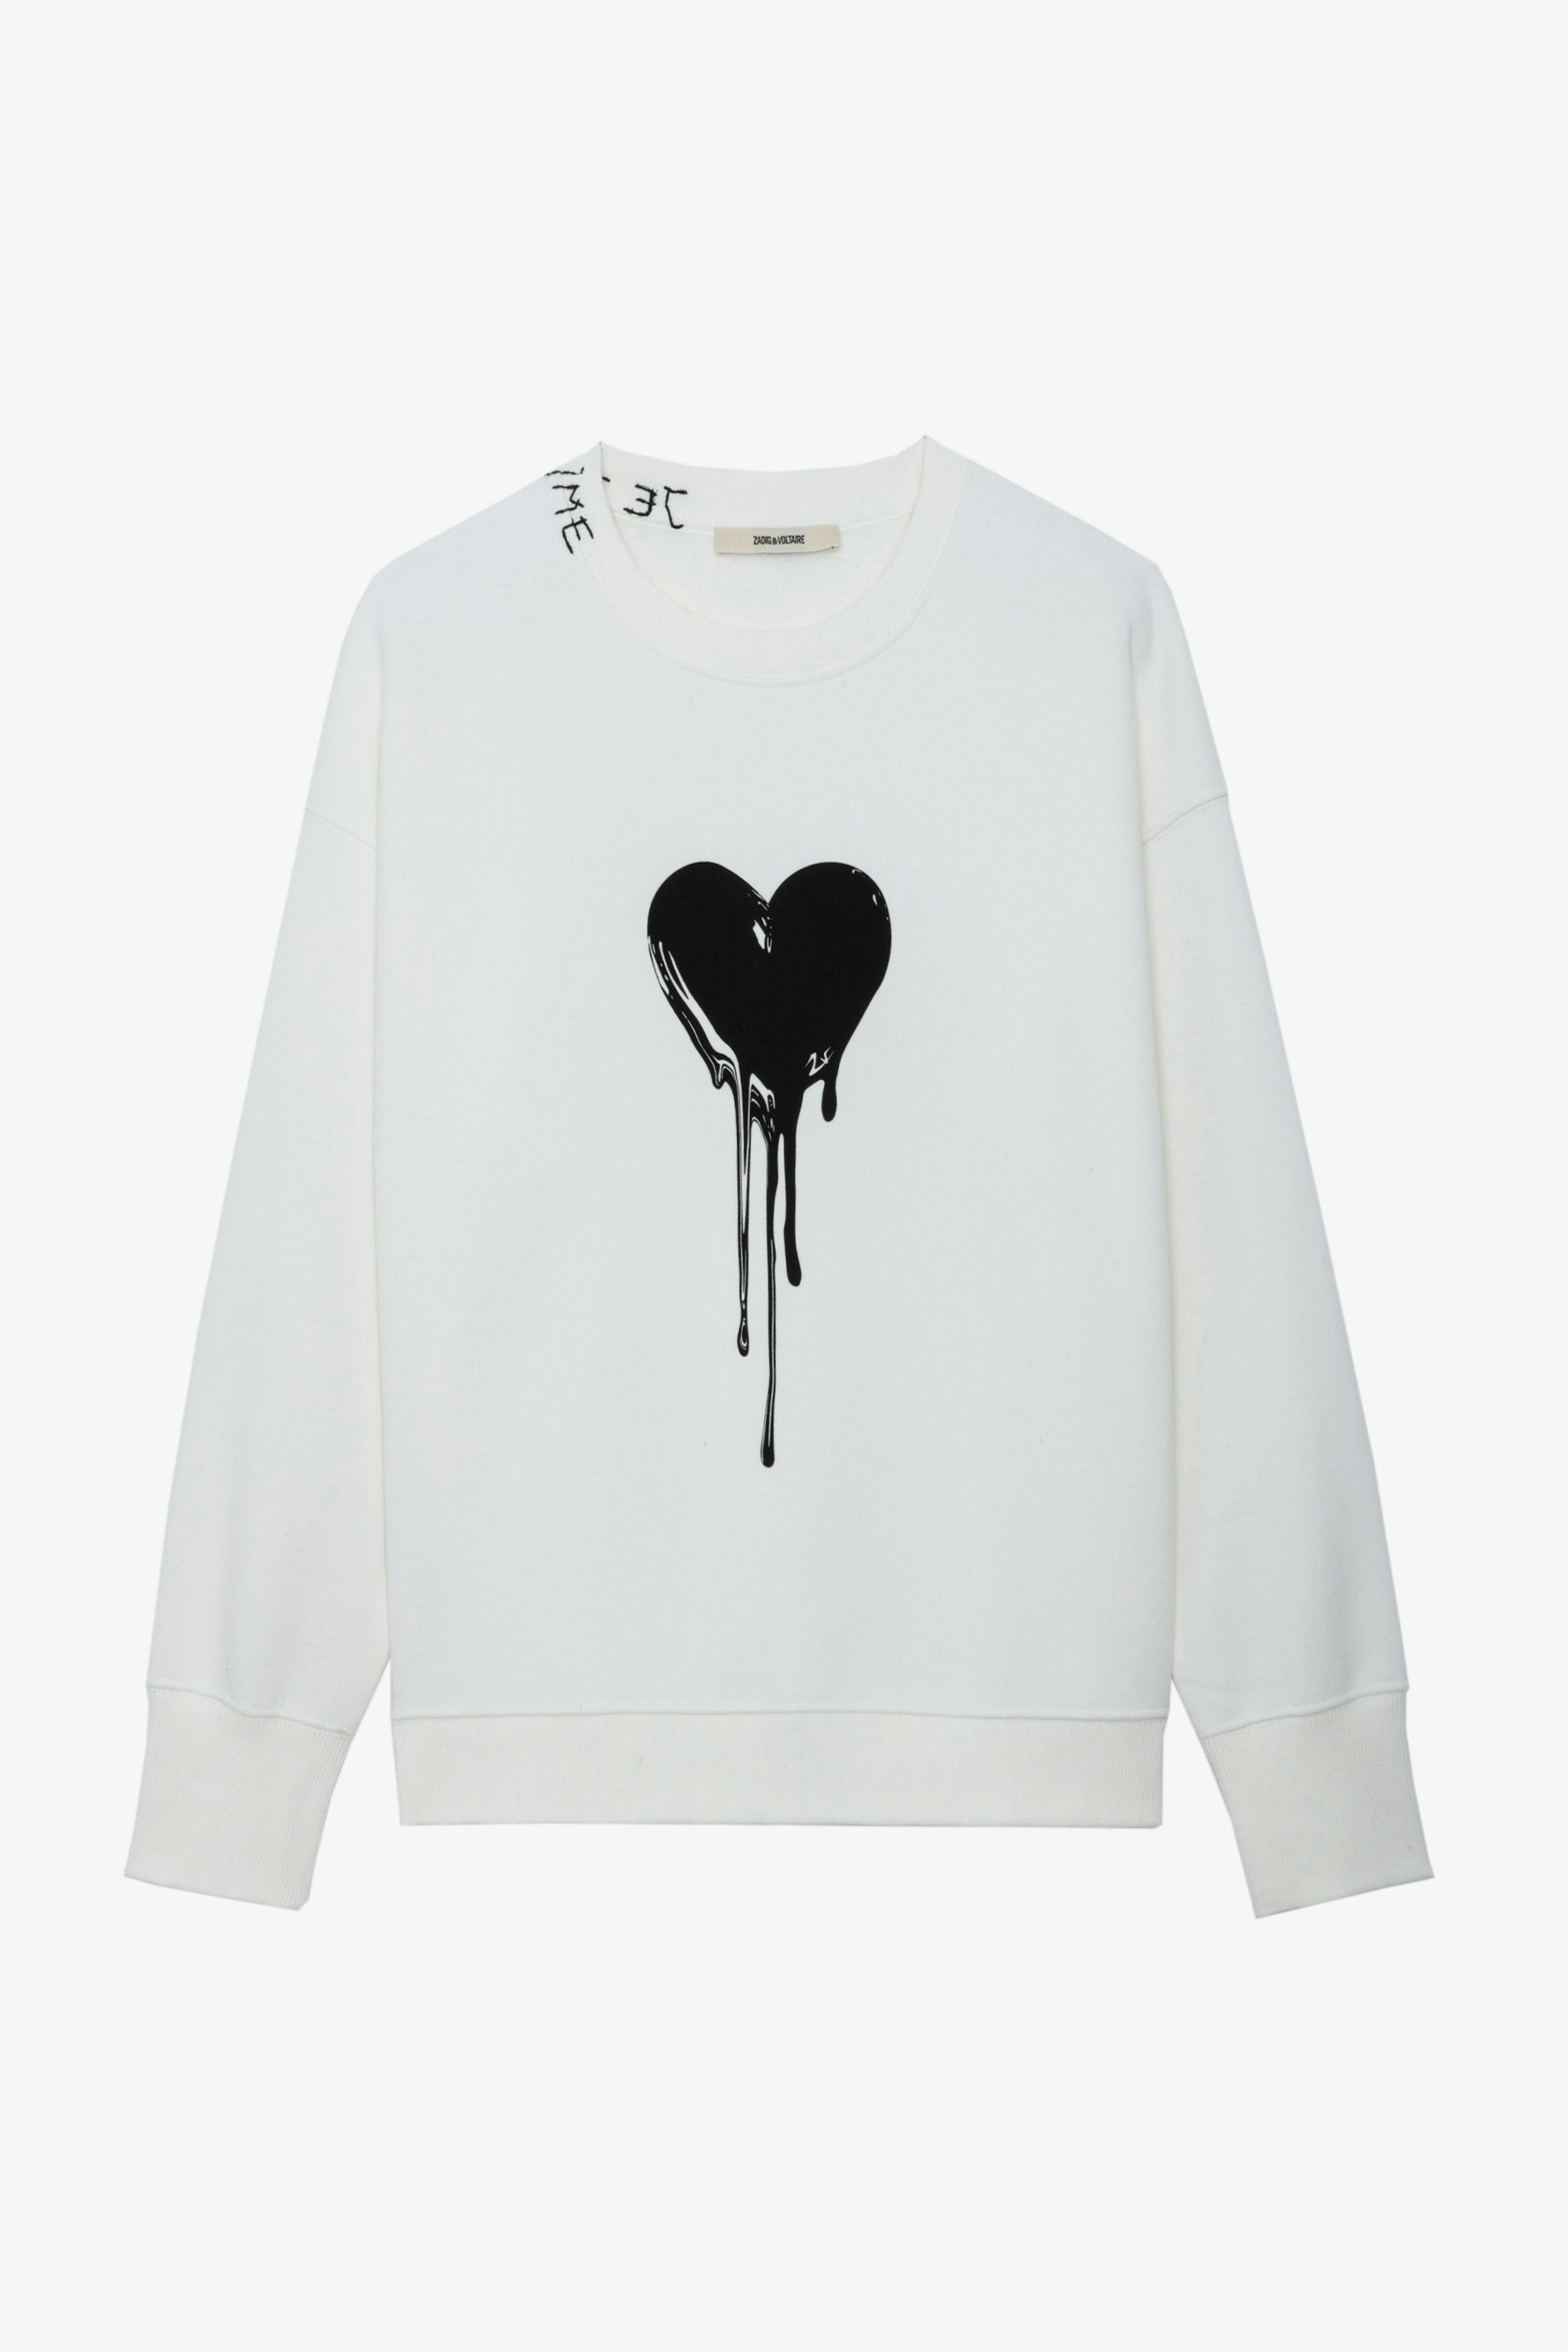 Sweatshirt Oscar Heart - Sweatshirt écru à manches longues, motif cœur coulant et broderie message au col.